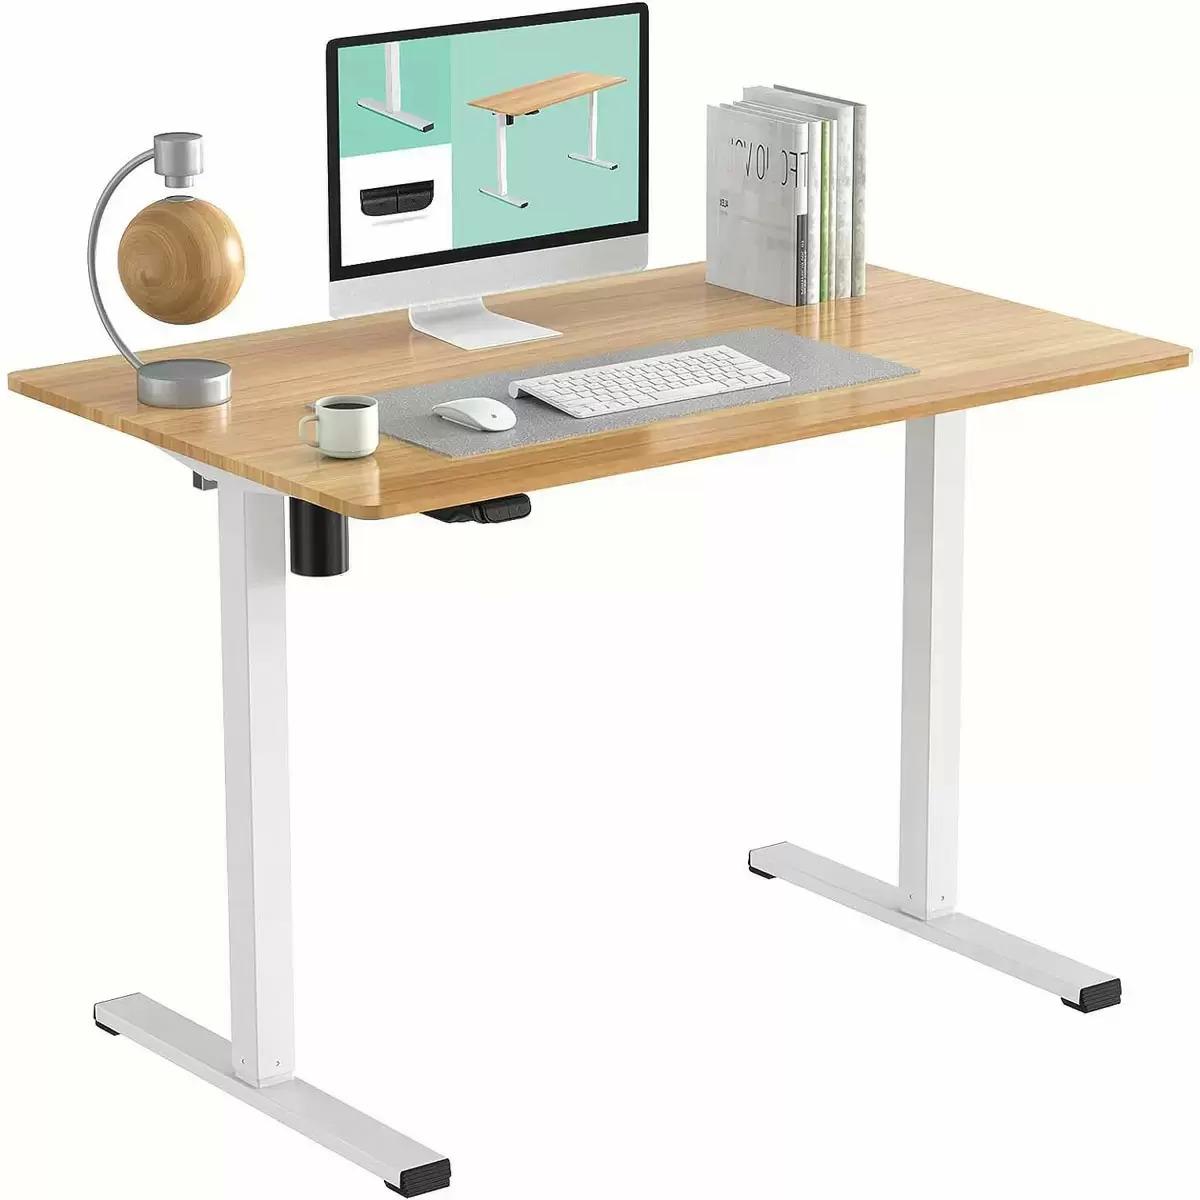 Flexispot 48in White Maple Standing Adjustable Desk for $99.99 Shipped